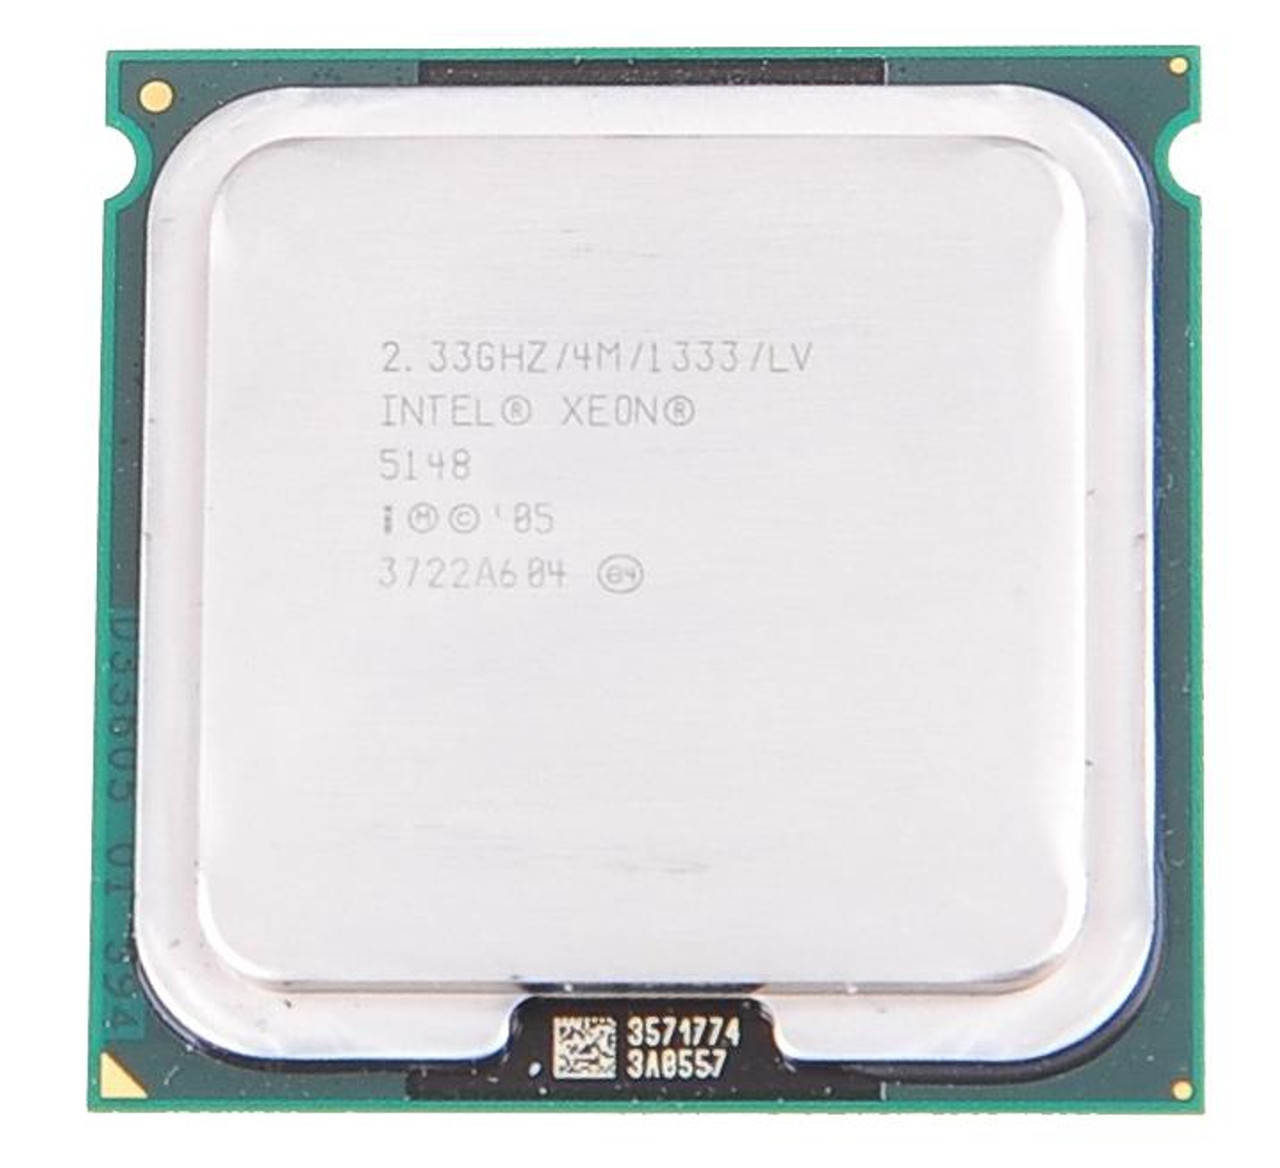 SLABH Intel Xeon LV 5148 Dual-Core 2.33GHz 1333MHz FSB 4MB L2 Cache Socket LGA771 Processor